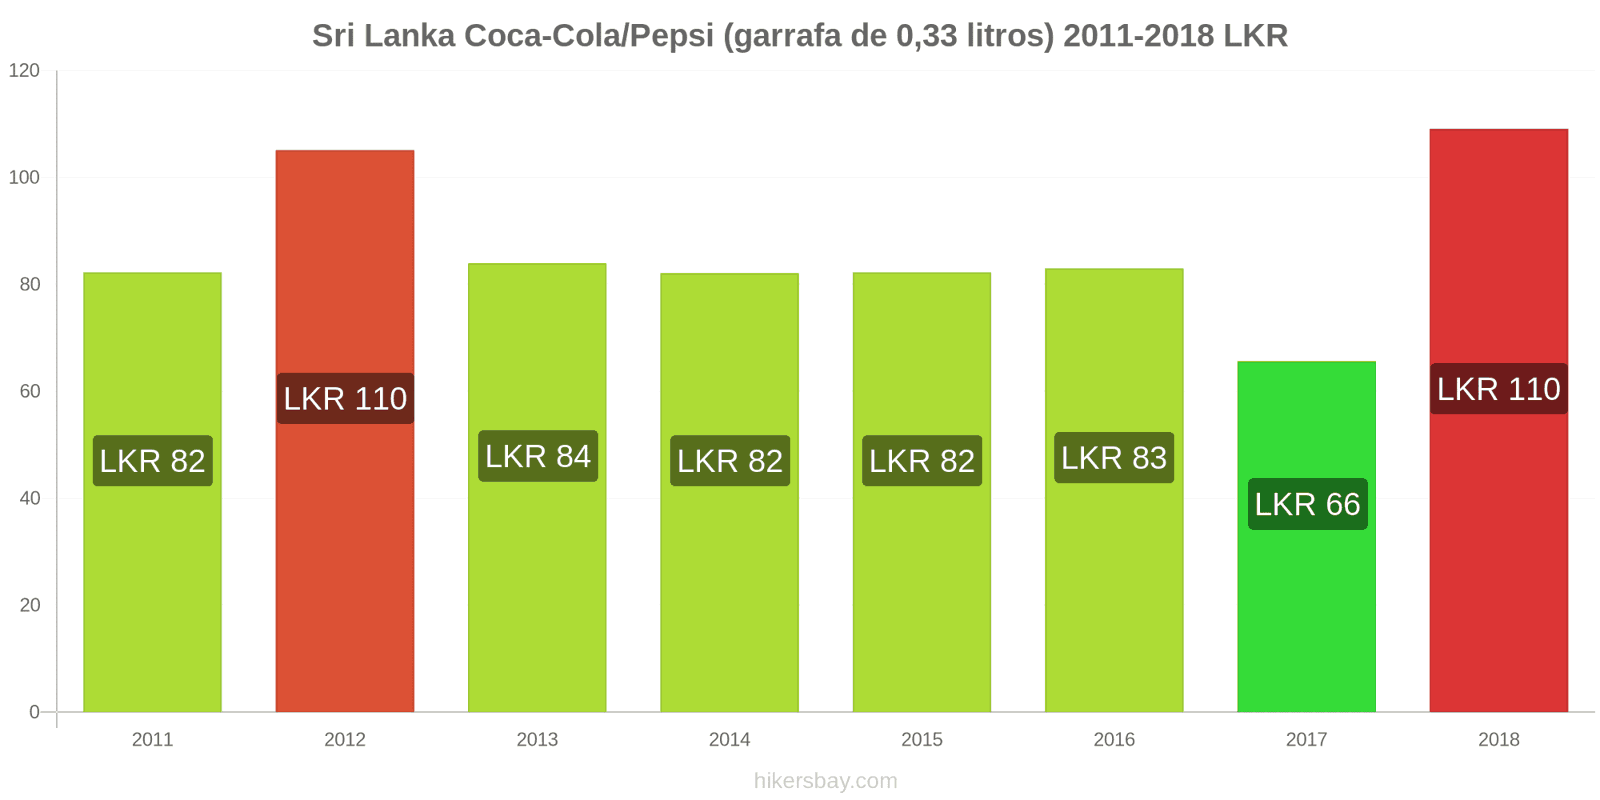 Sri Lanka mudanças de preços Coca-Cola/Pepsi (garrafa de 0.33 litros) hikersbay.com